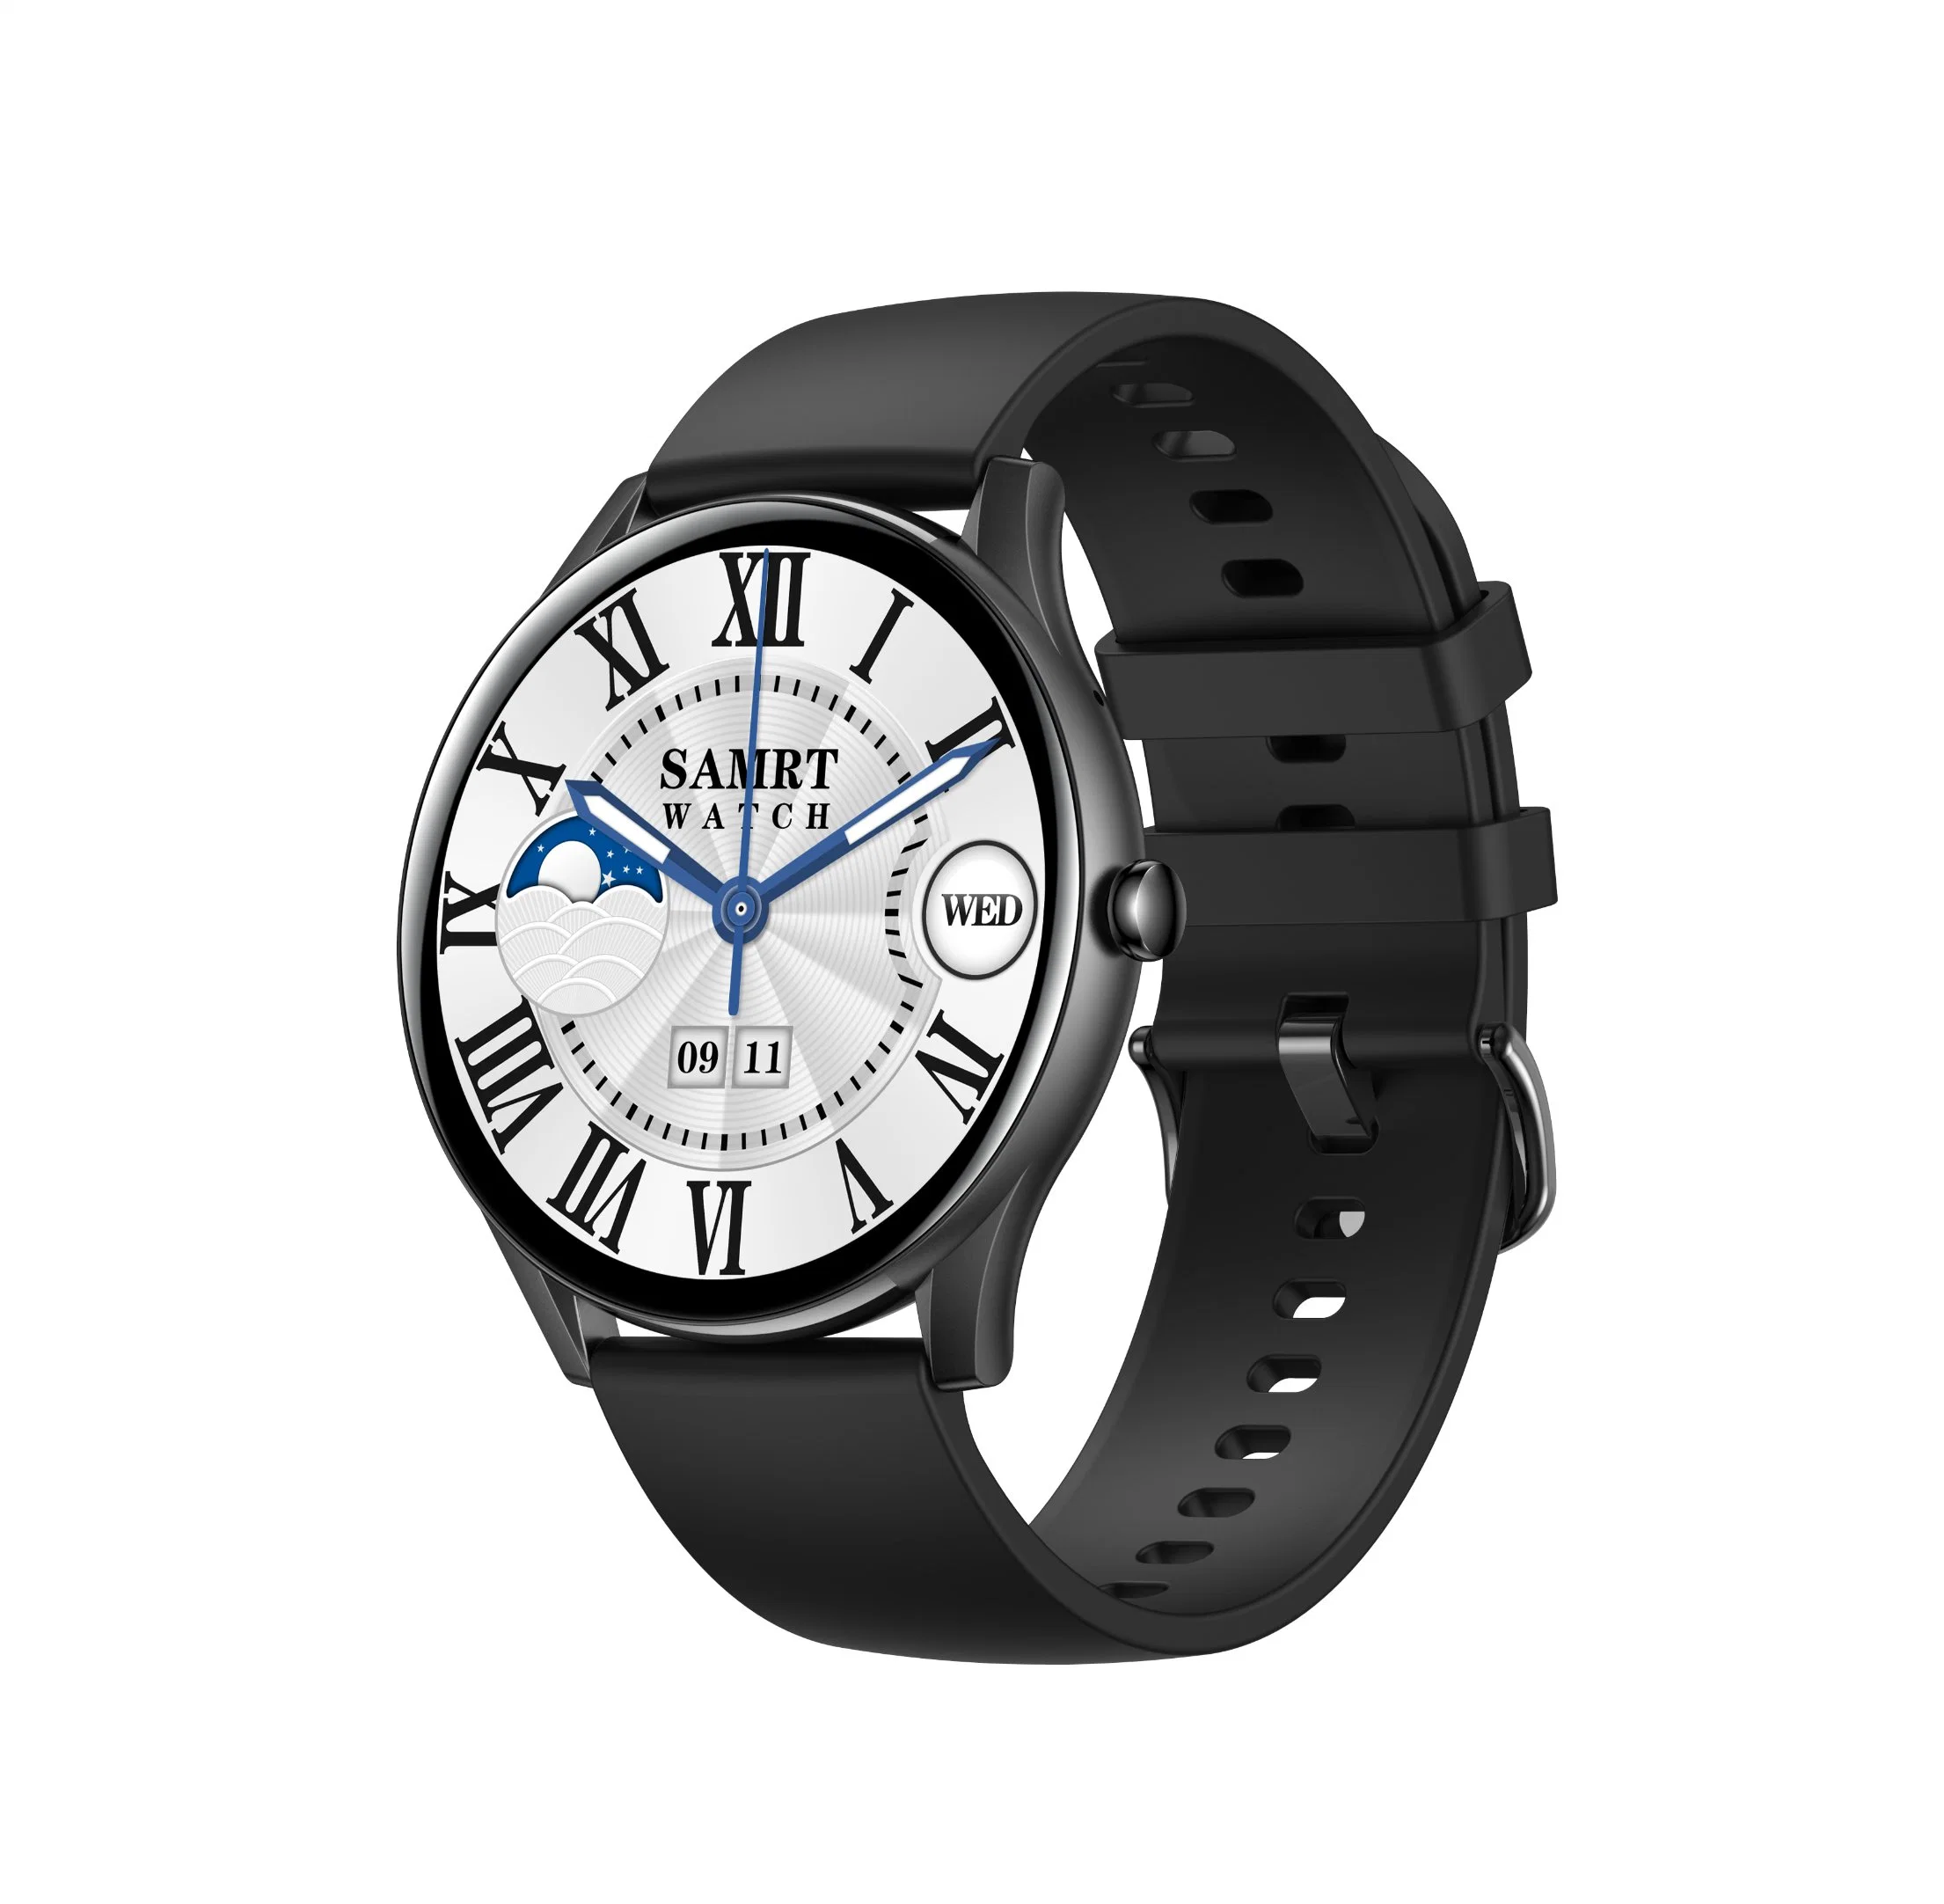 Смарт-часы Kronus 2022 Ultra Smartwatch серии 7 8 S8 2.08 мм полноэкранные смарт-часы Ultra Smart Watch T500 Iwo8 dt No 1 Kr35